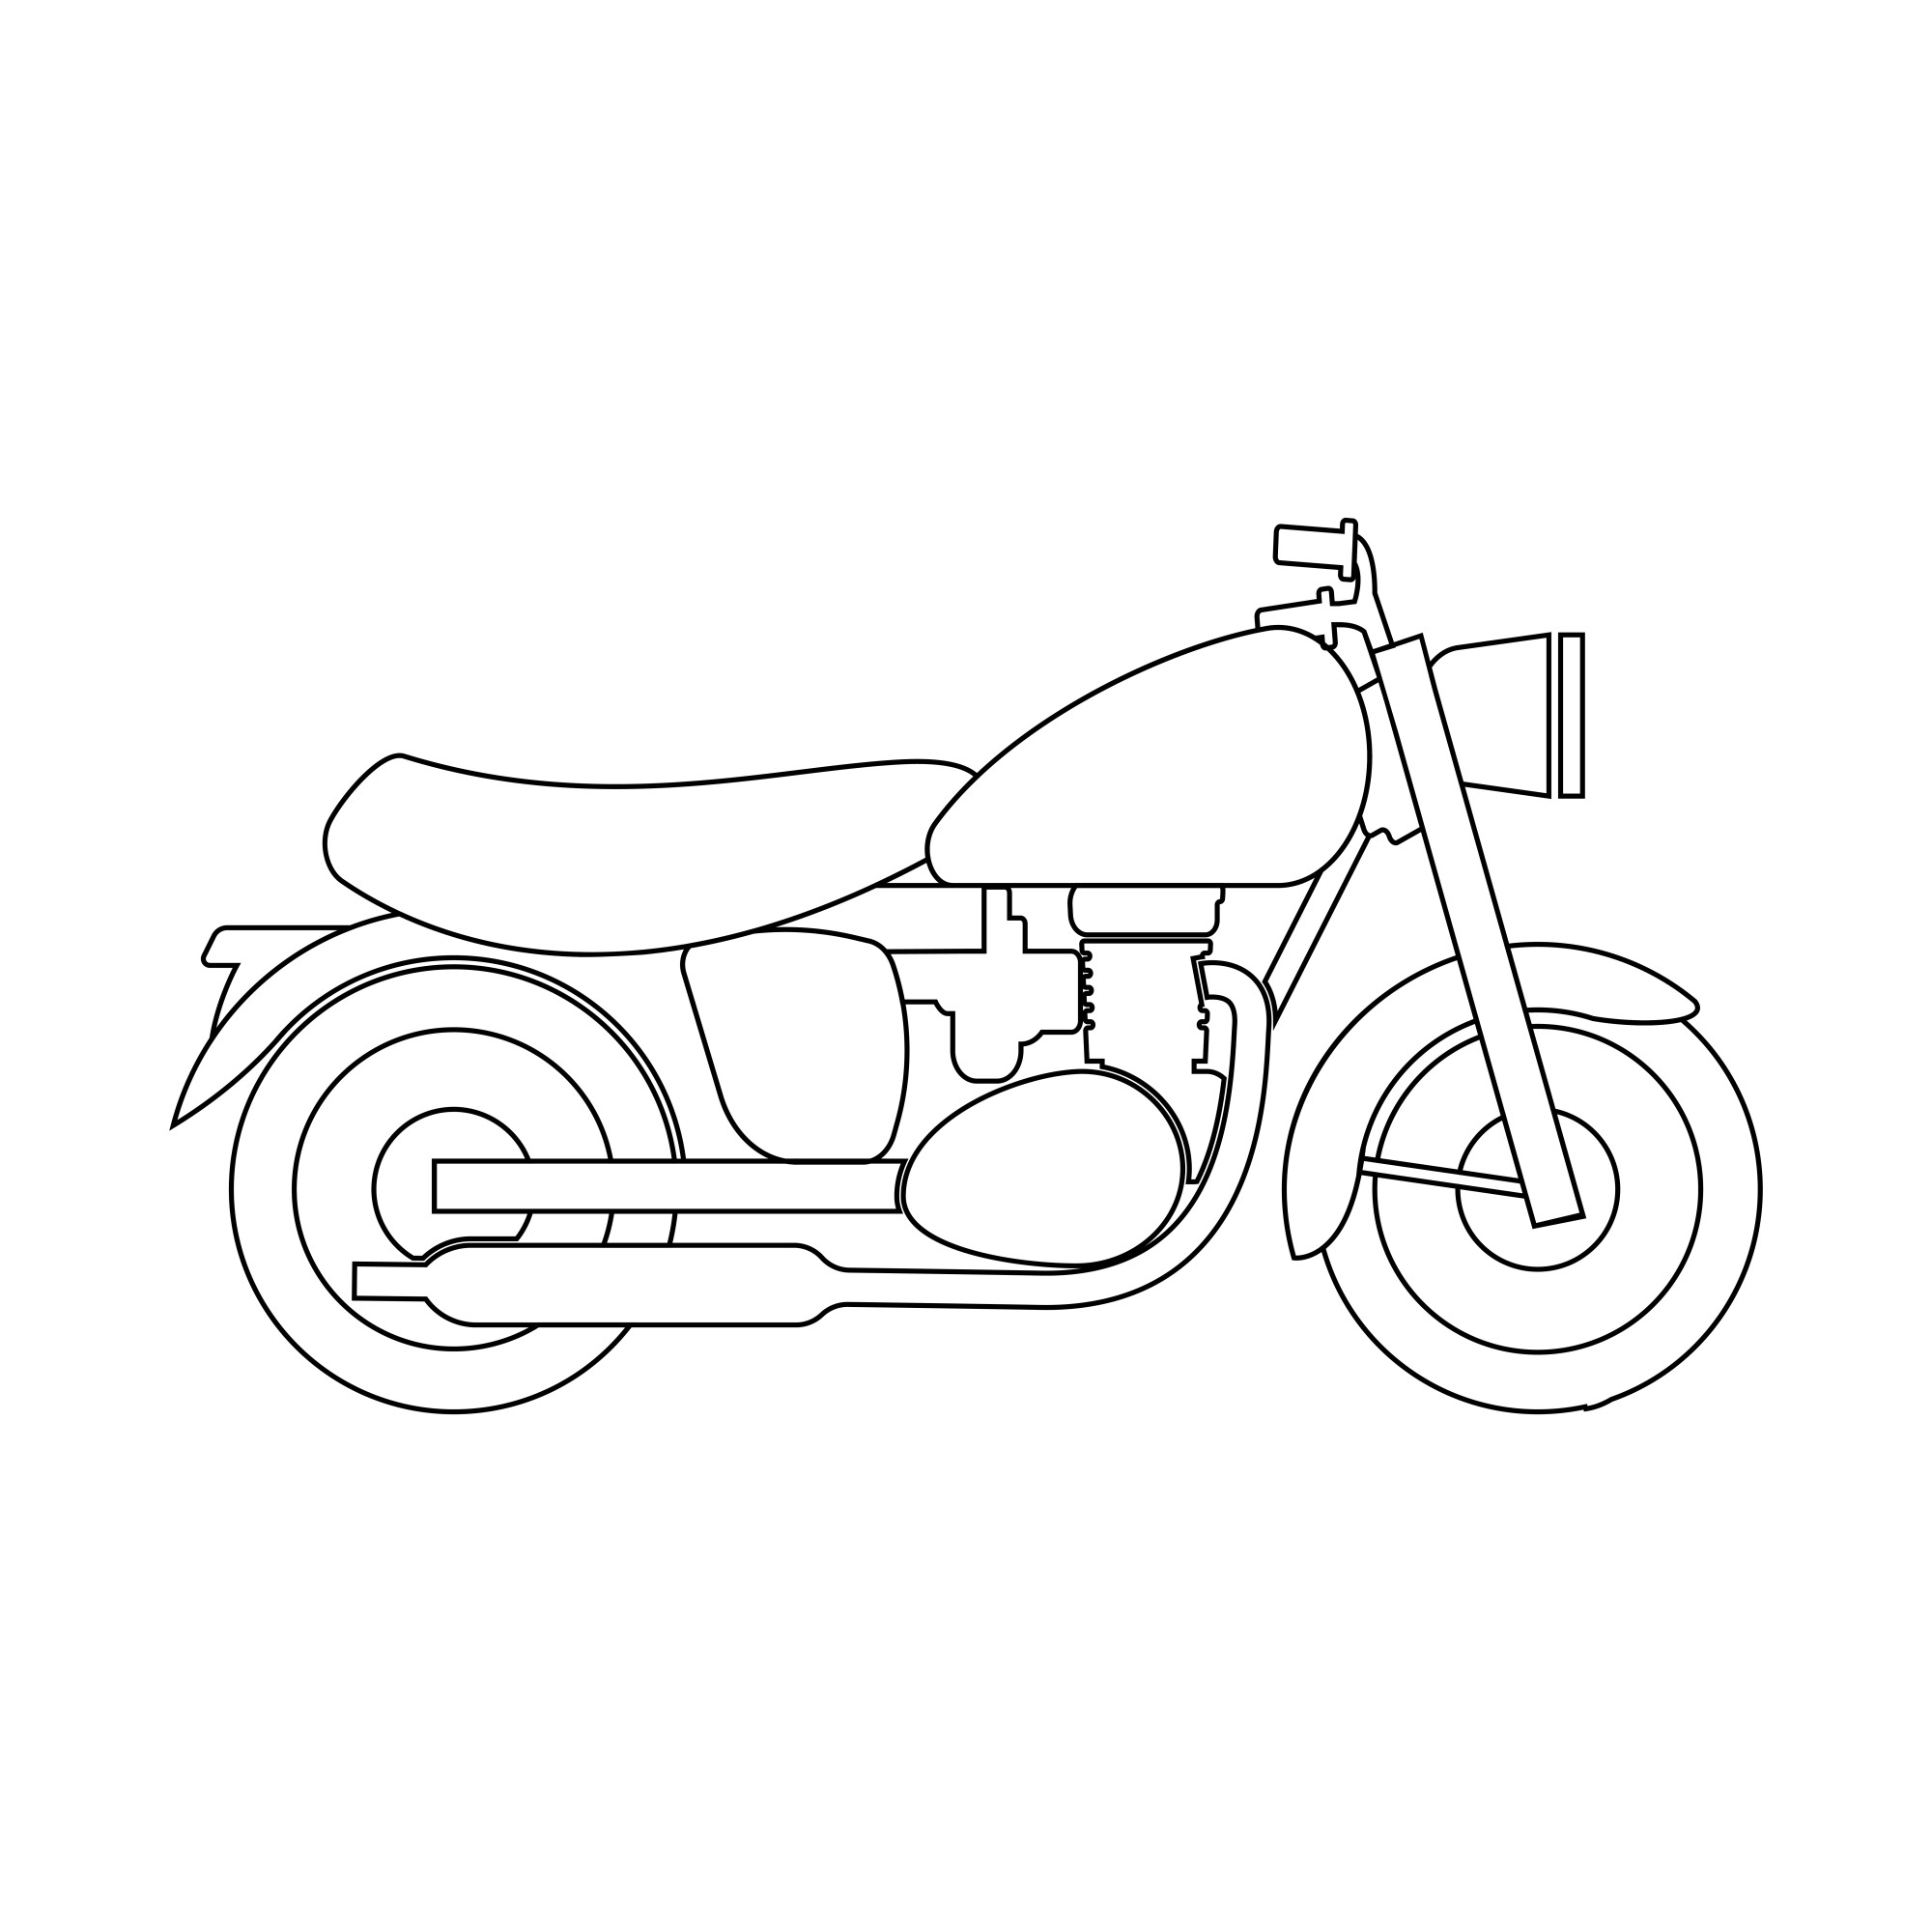 Раскраска для детей: мотоцикл «Флаг свободы»